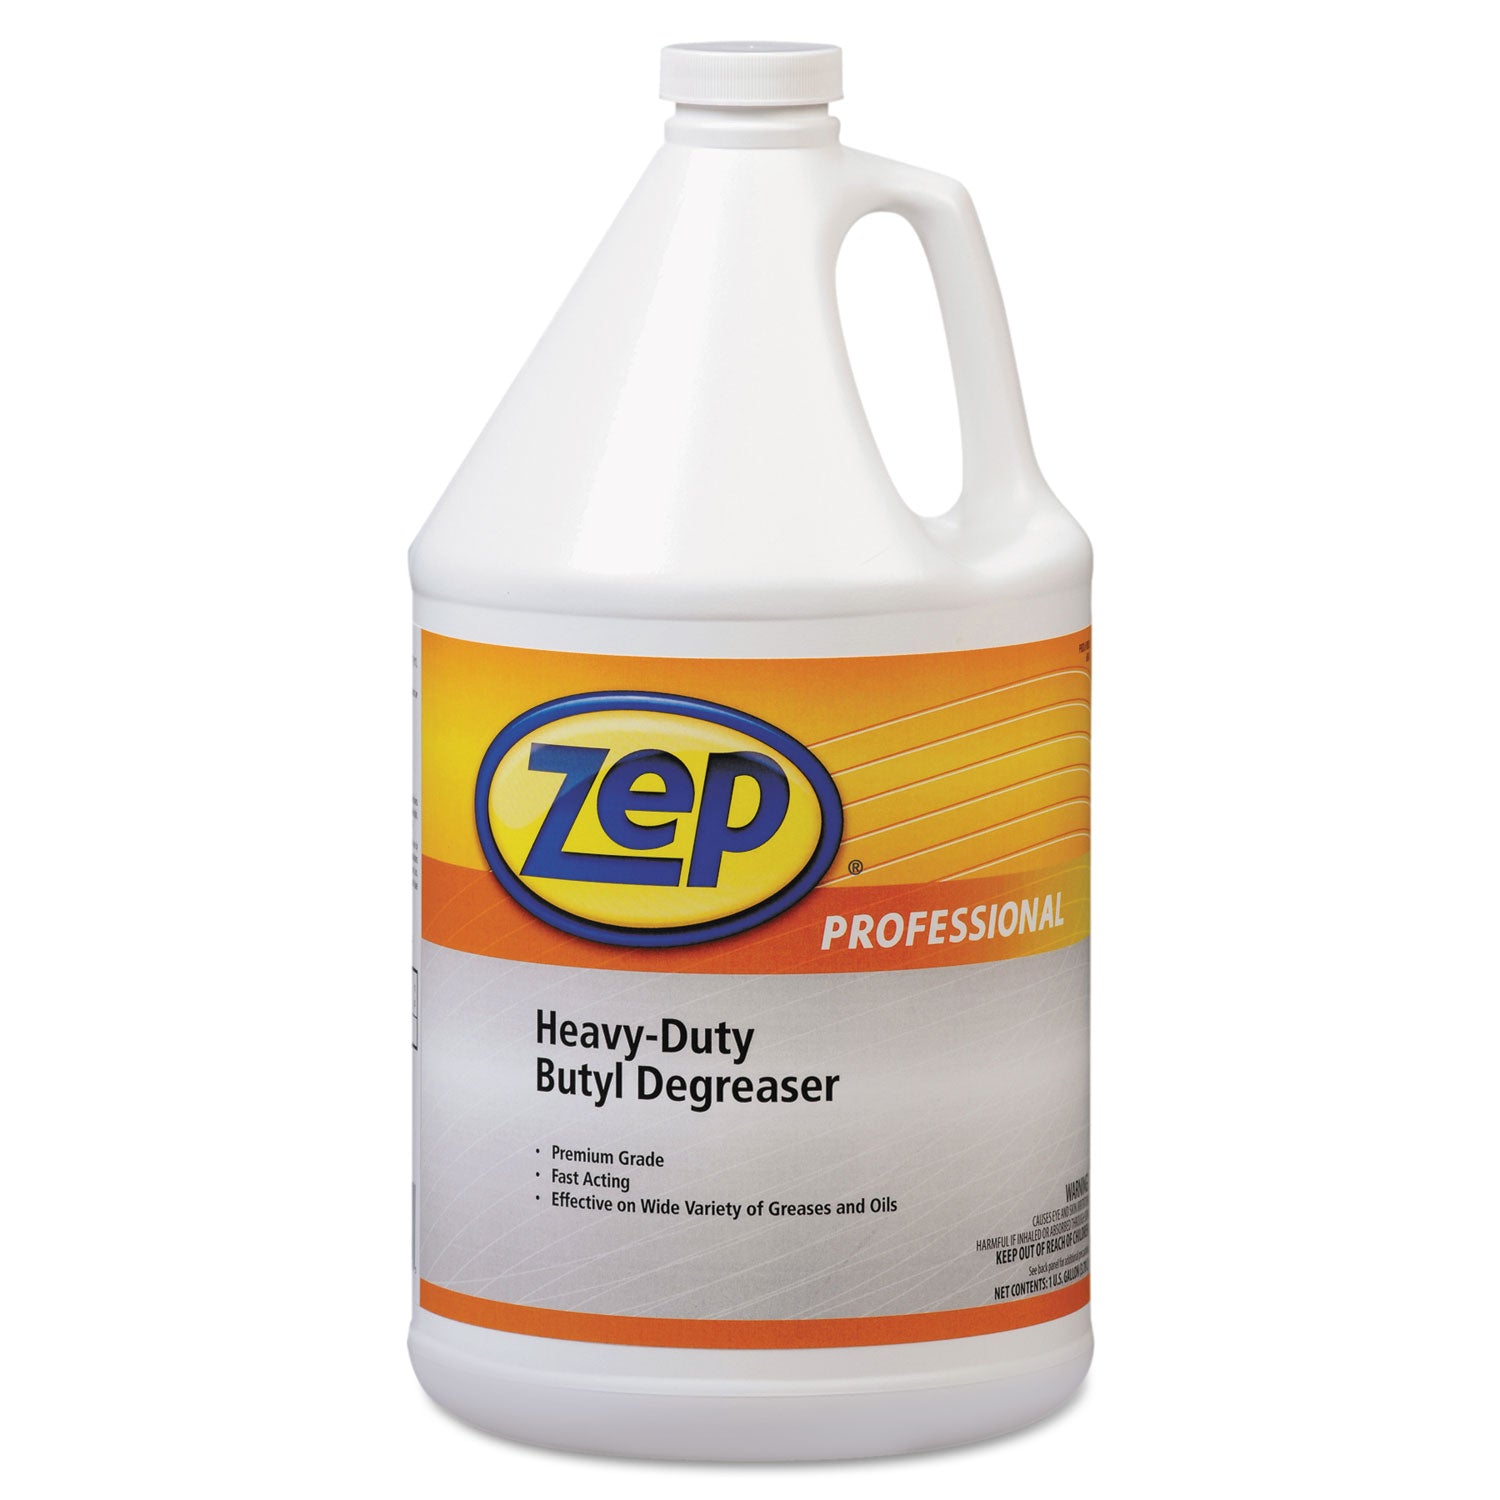 heavy-duty-butyl-degreaser-1-gal-bottle_zpp1041483ea - 1